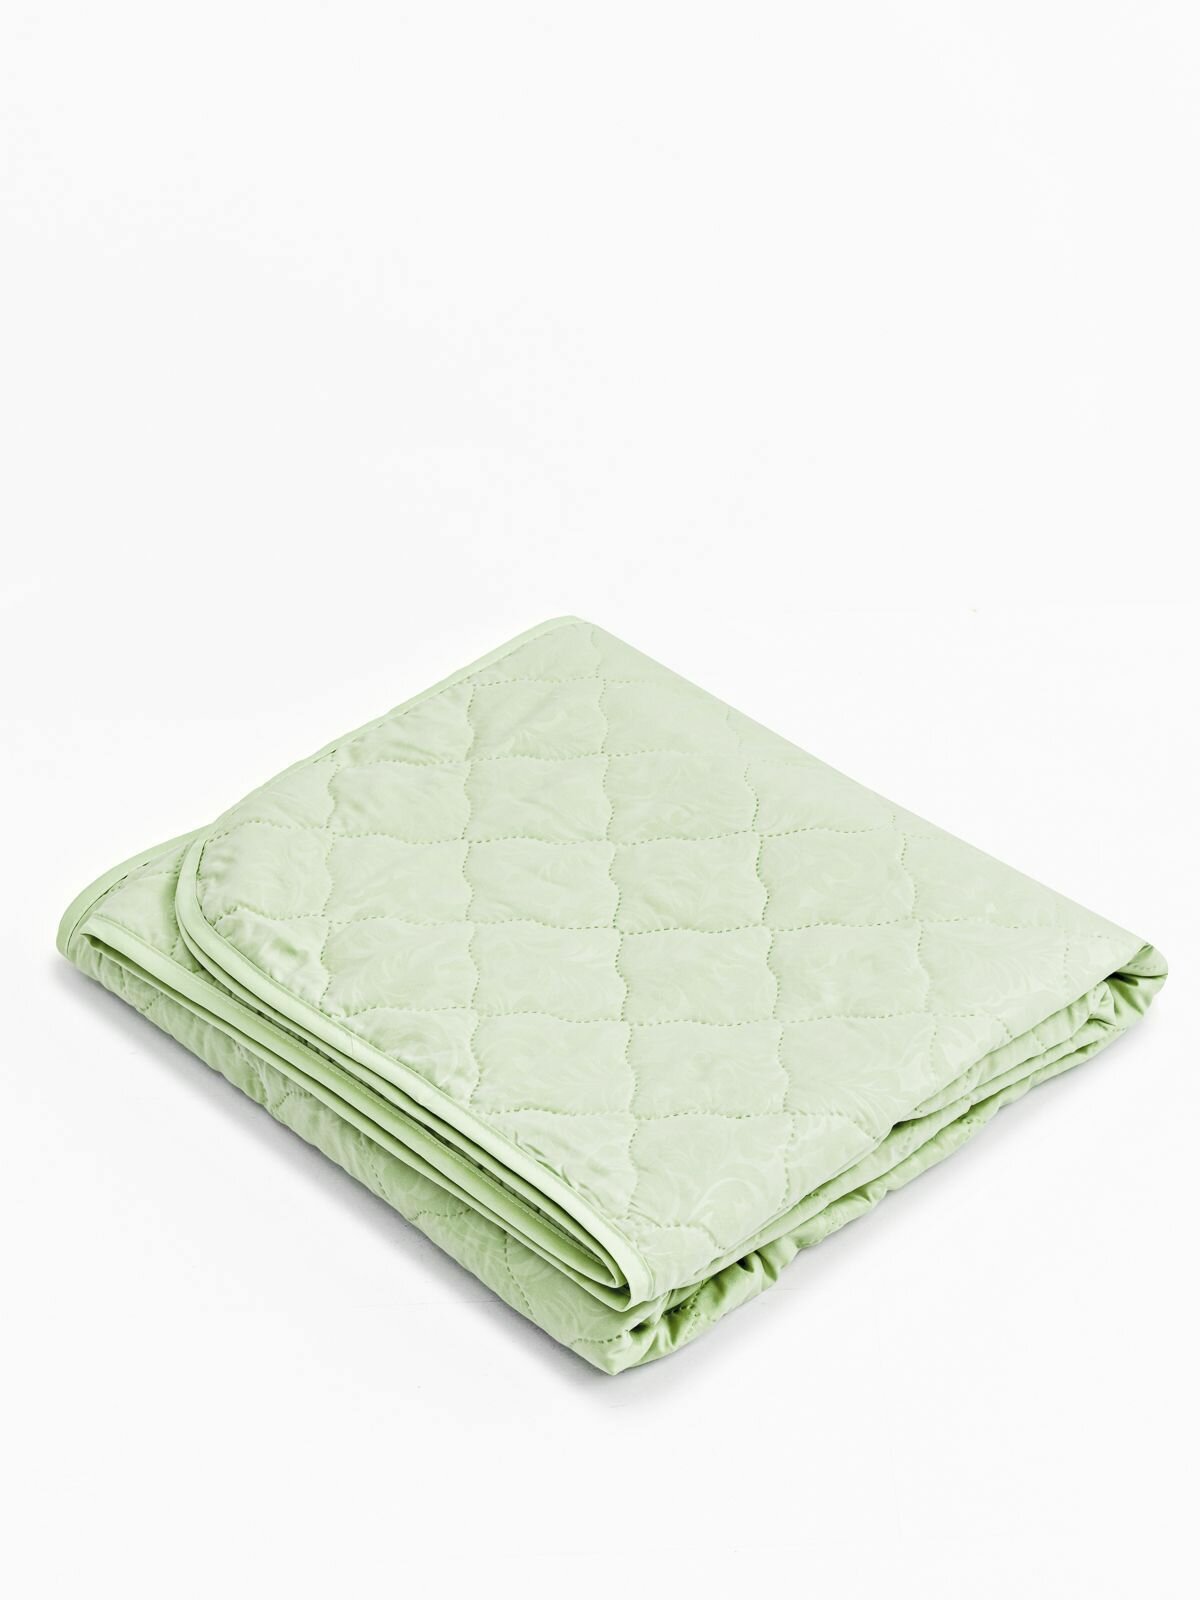 Одеяло летнее салатовое Vesta 1,5 спальное дешевое тонкое, материал микрофибра, покрывало легкое 140х205 см